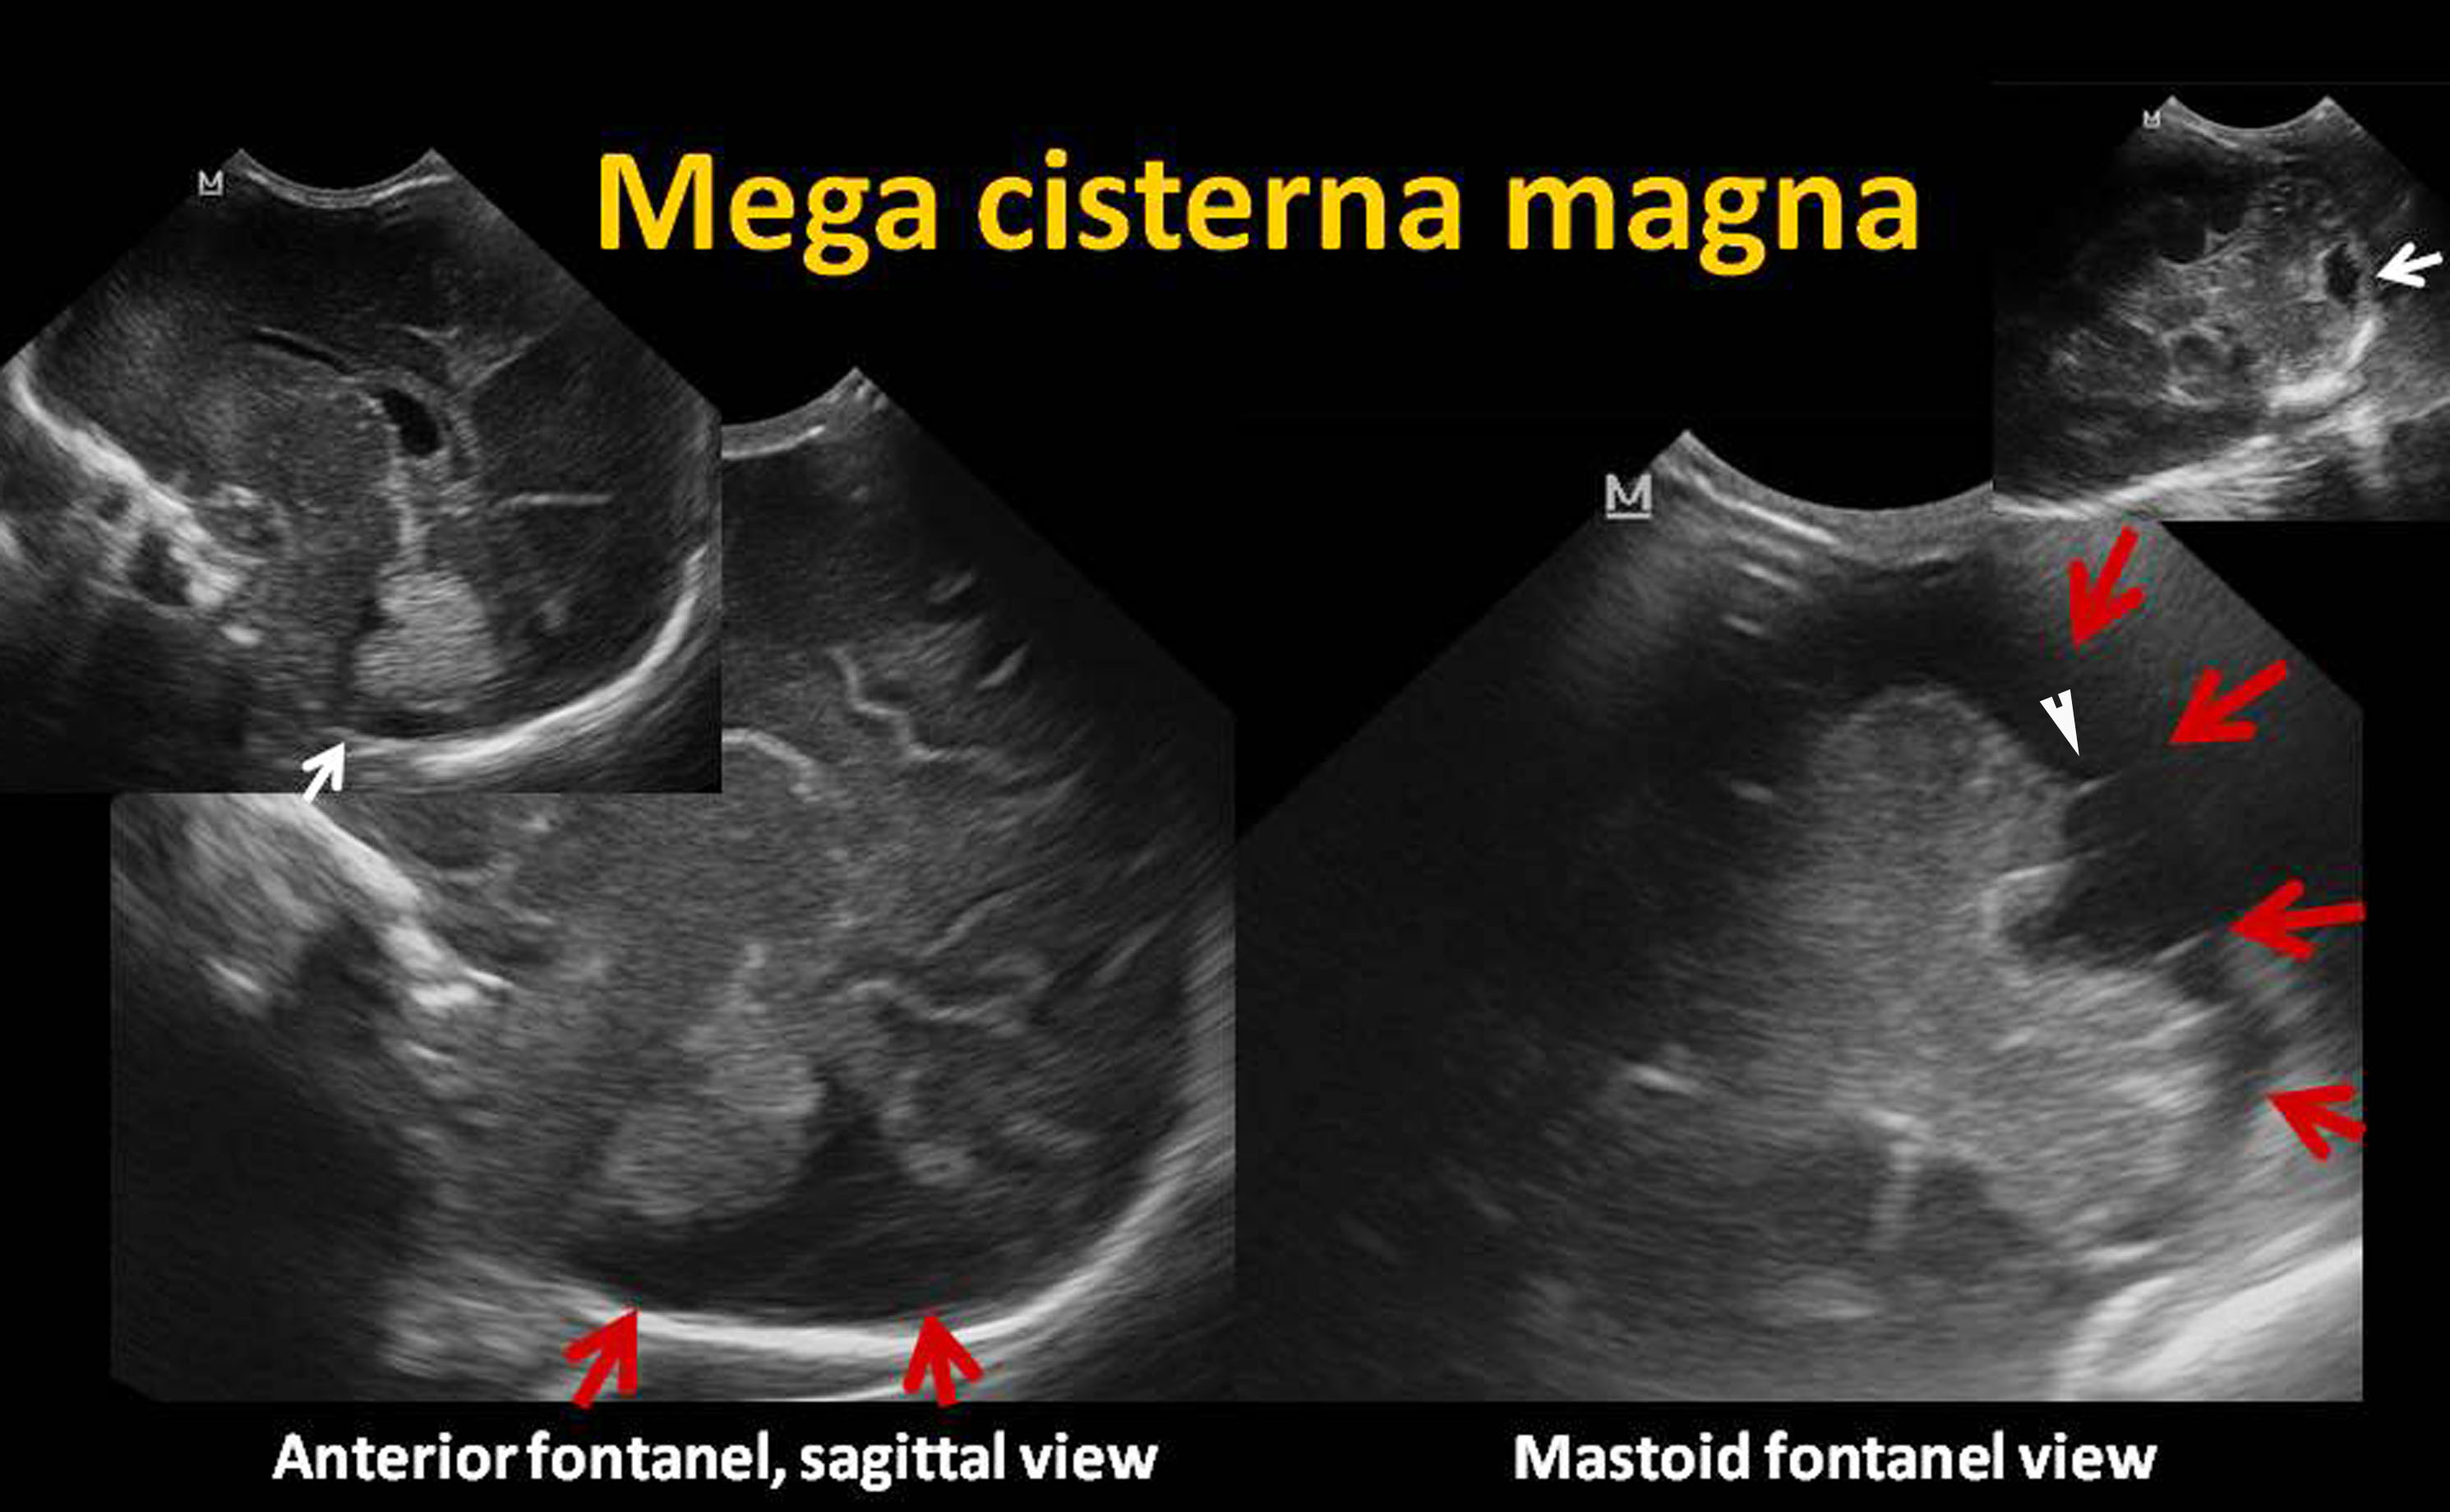 normal fetal cisterna magna mri